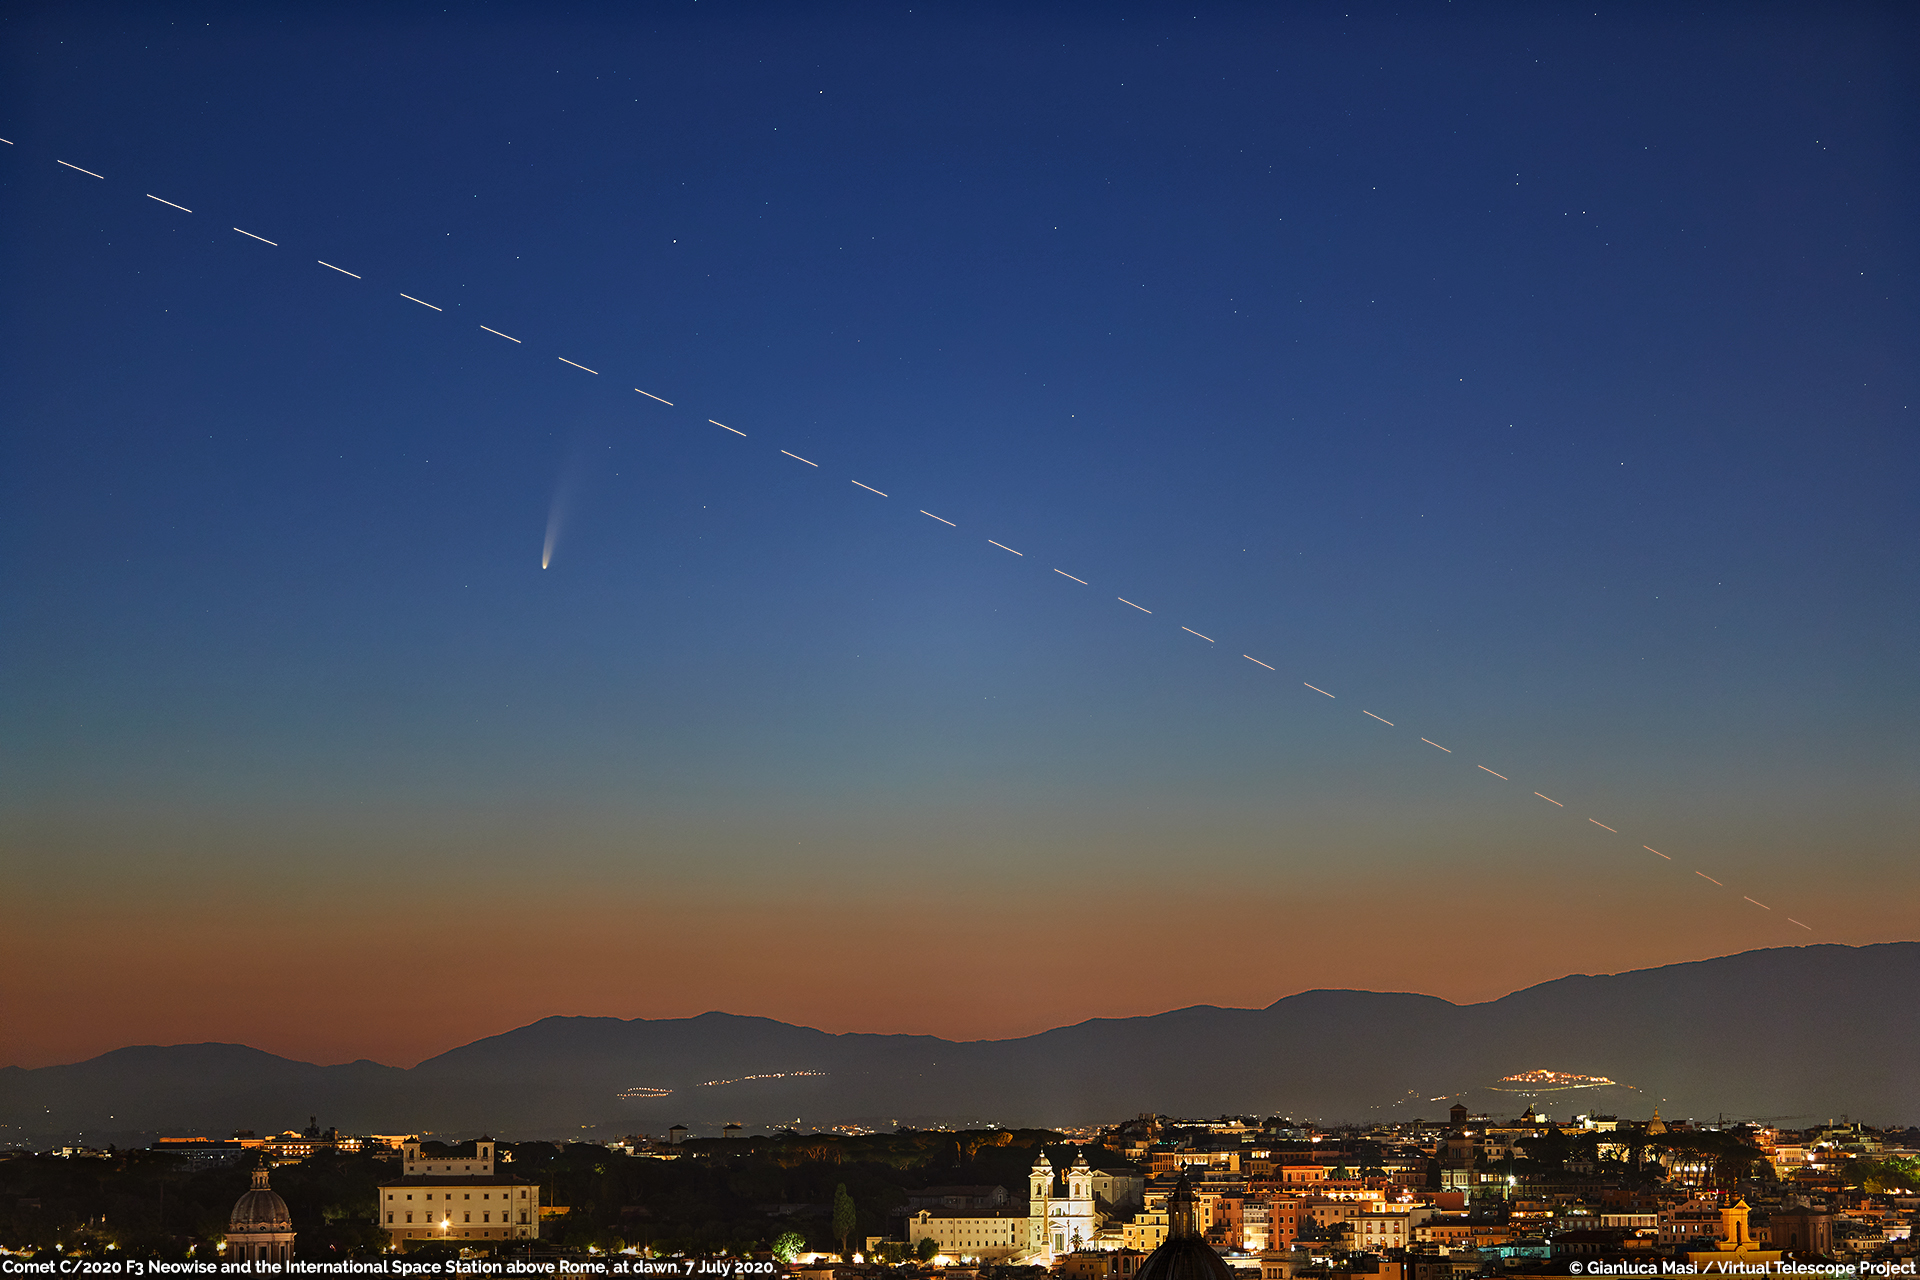 La cometa C/2020 F3 Neowise ripresa su Roma, all’alba, il 7 luglio 2020. E’ anche visibile la traccia della Stazione Spaziale.